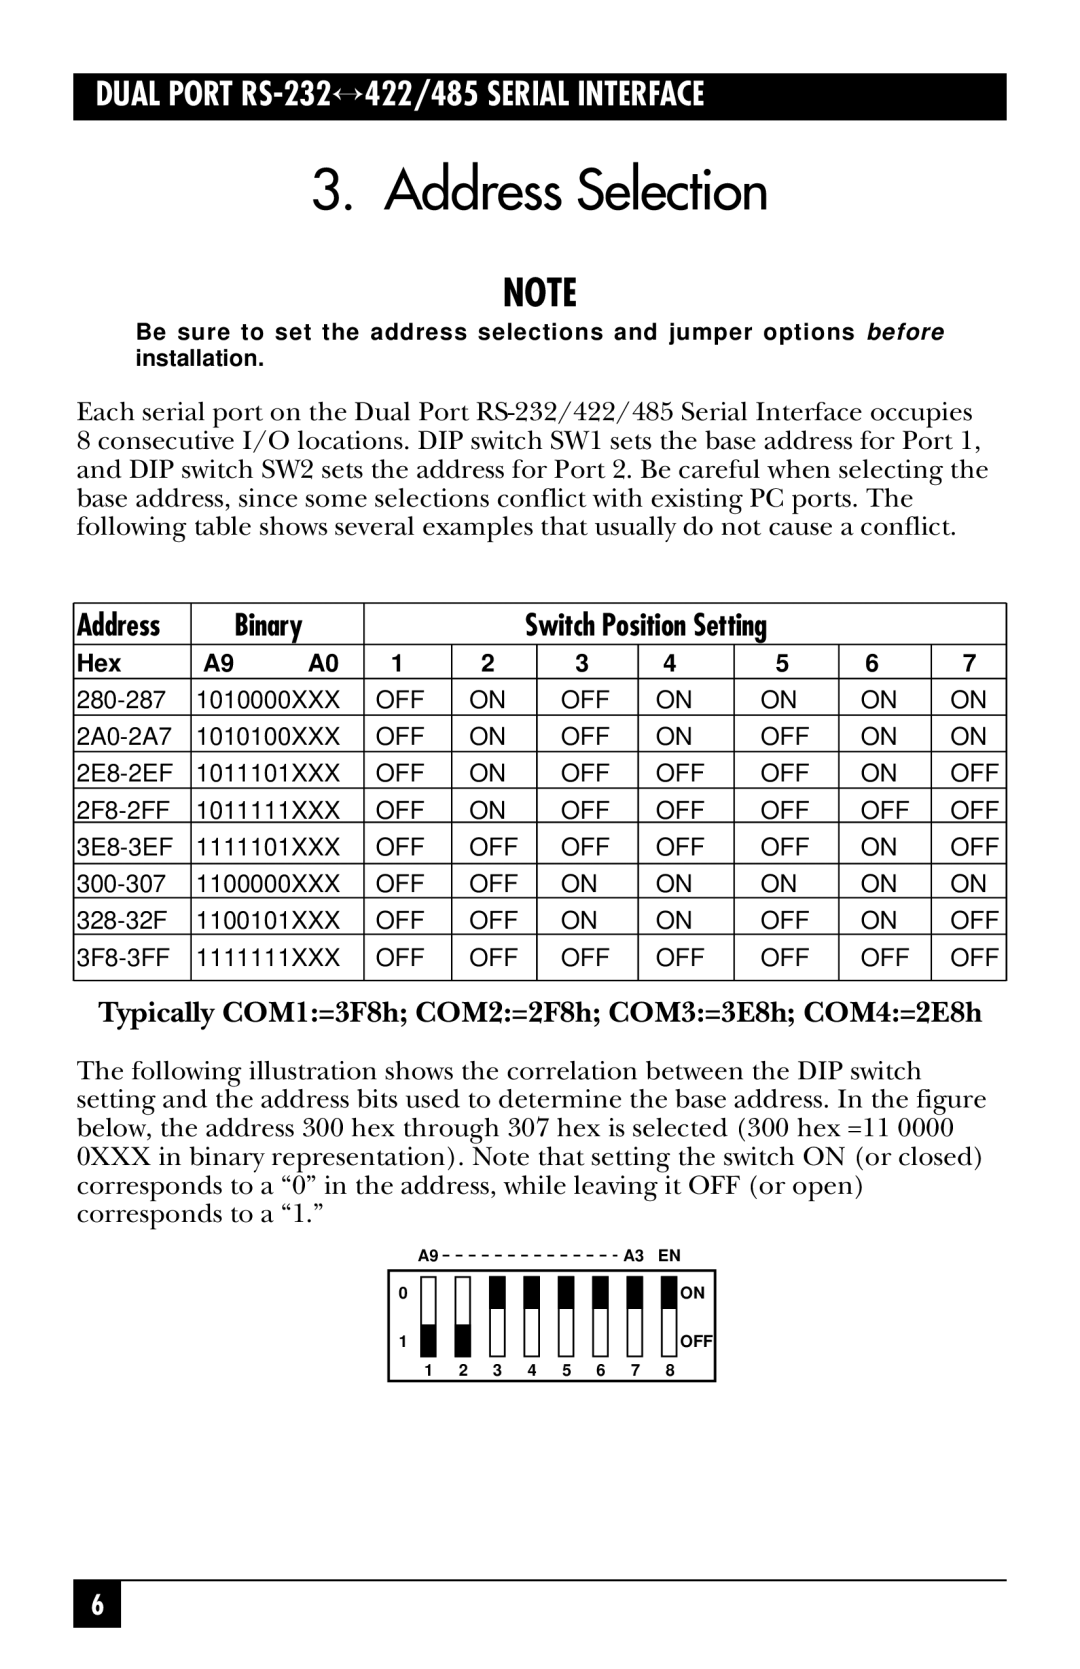 Black Box IC113C Address Selection, Binary, Typically COM1=3F8h COM2=2F8h COM3=3E8h COM4=2E8h, Switch Position Setting 